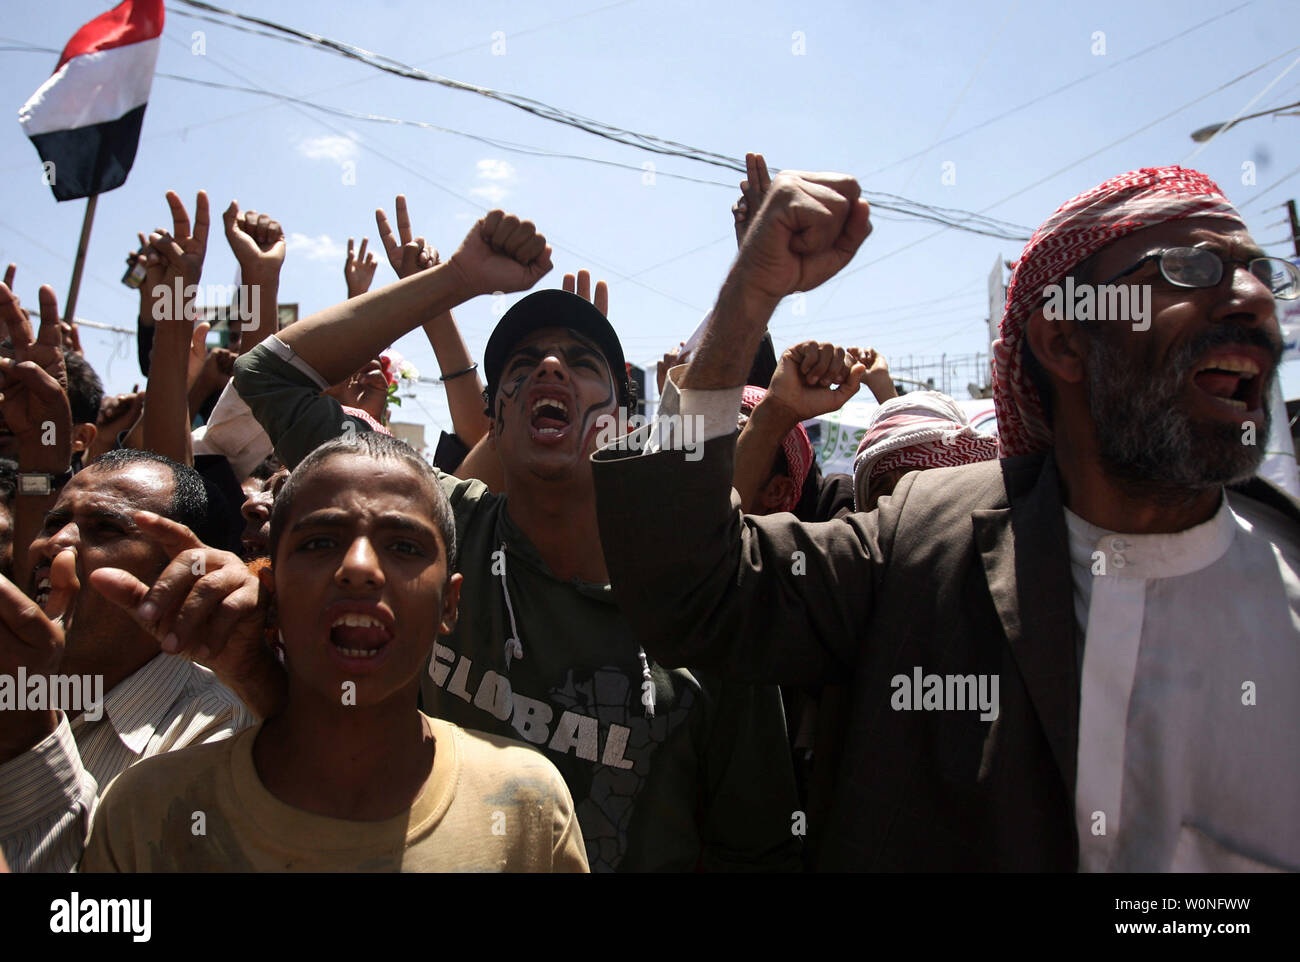 Manifestanti yemenita chant slogan durante una manifestazione per chiedere le dimissioni del presidente Ali Abdullah Saleh in Sanaa, Yemen, il 27 settembre 2011. Un utente malintenzionato suicida alla guida di una esplosivi-laden auto si è fatto esplodere accanto al passaggio del convoglio Yemen il ministro della difesa, scampato all'attacco incolumi, sicurezza funzionari e testimoni ha detto. UPI/Abdulrahman Abdallah Foto Stock